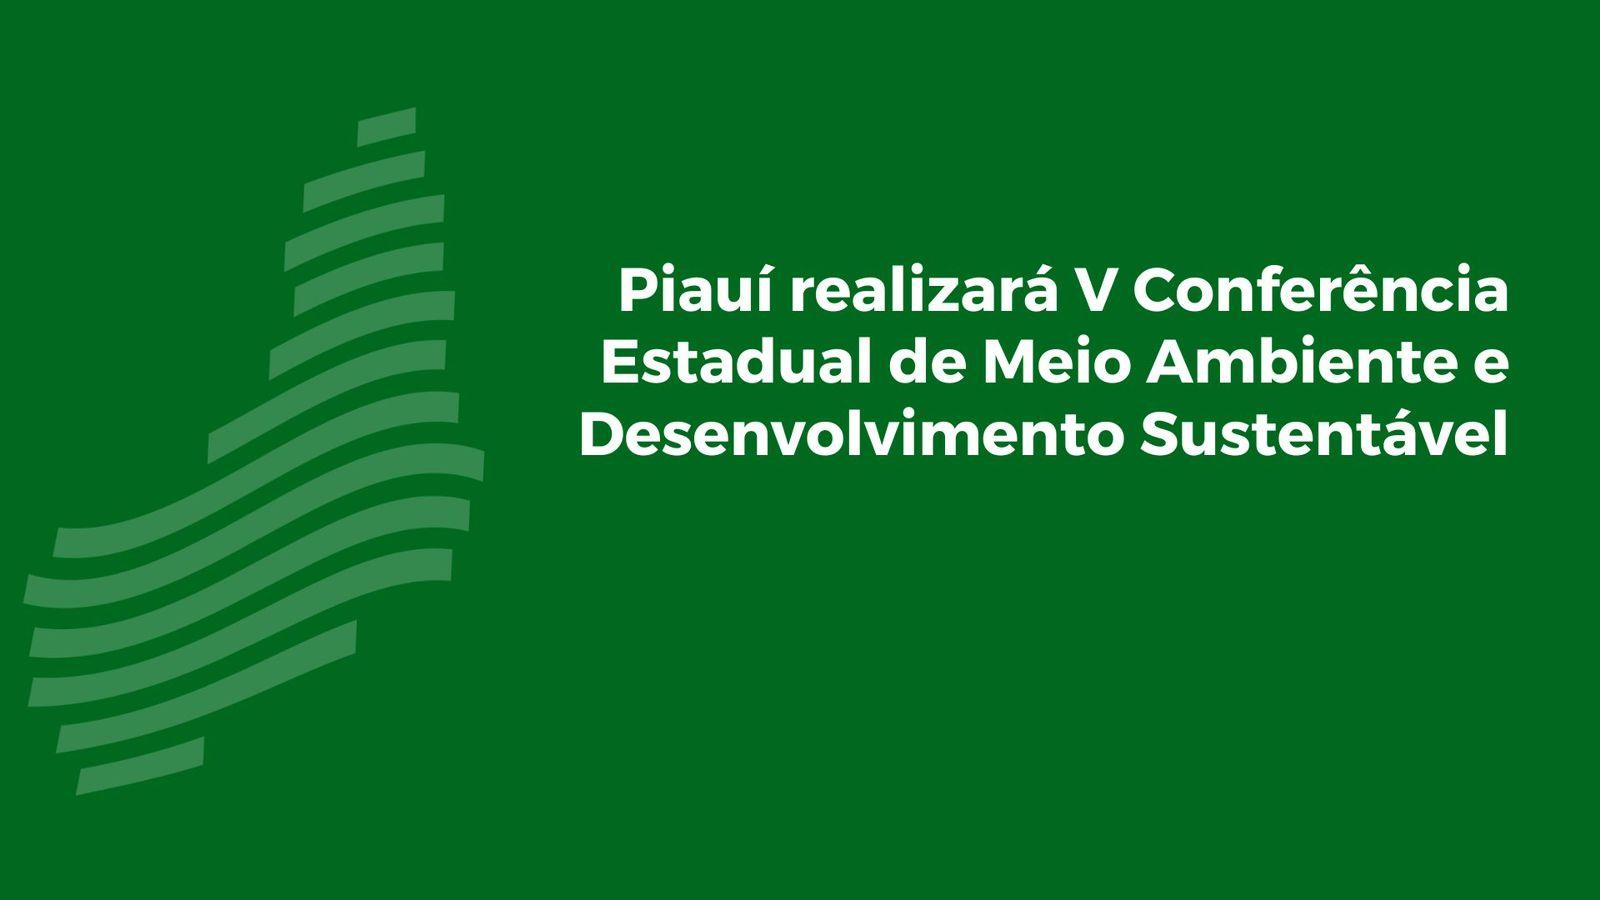 Piauí realizará V Conferência Estadual de Meio Ambiente e Desenvolvimento Sustentável